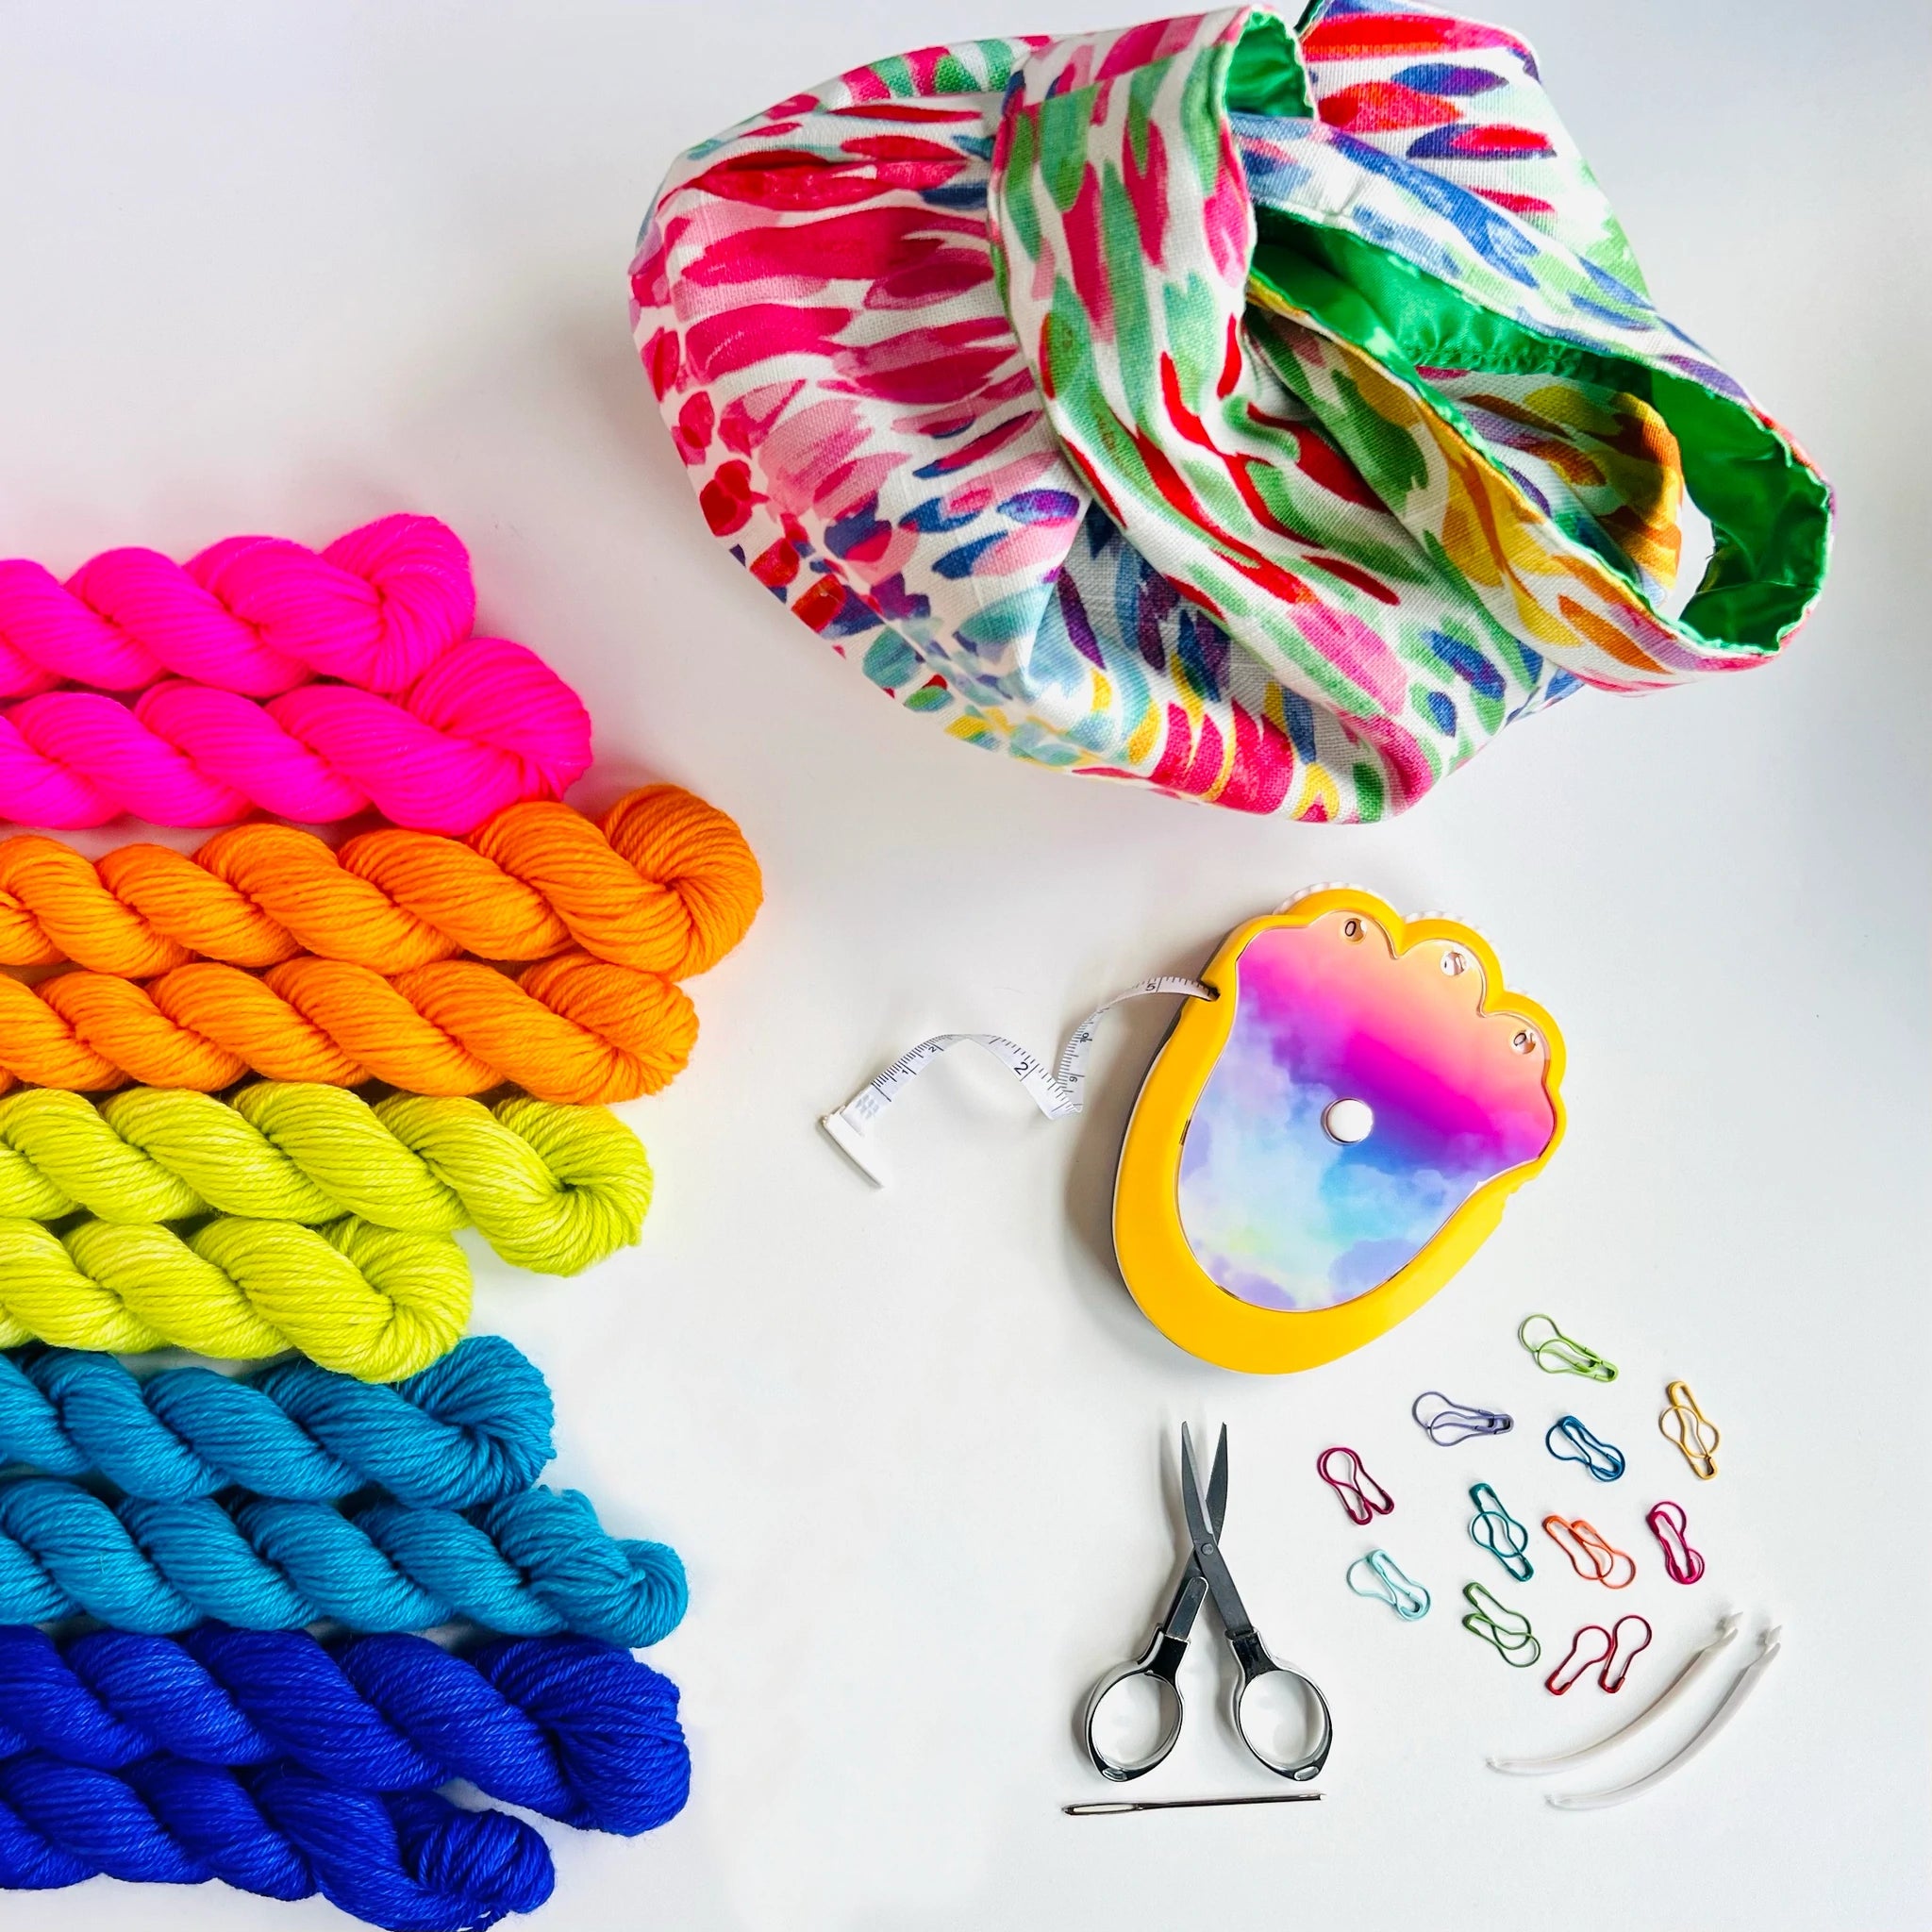 The Crochet Kit